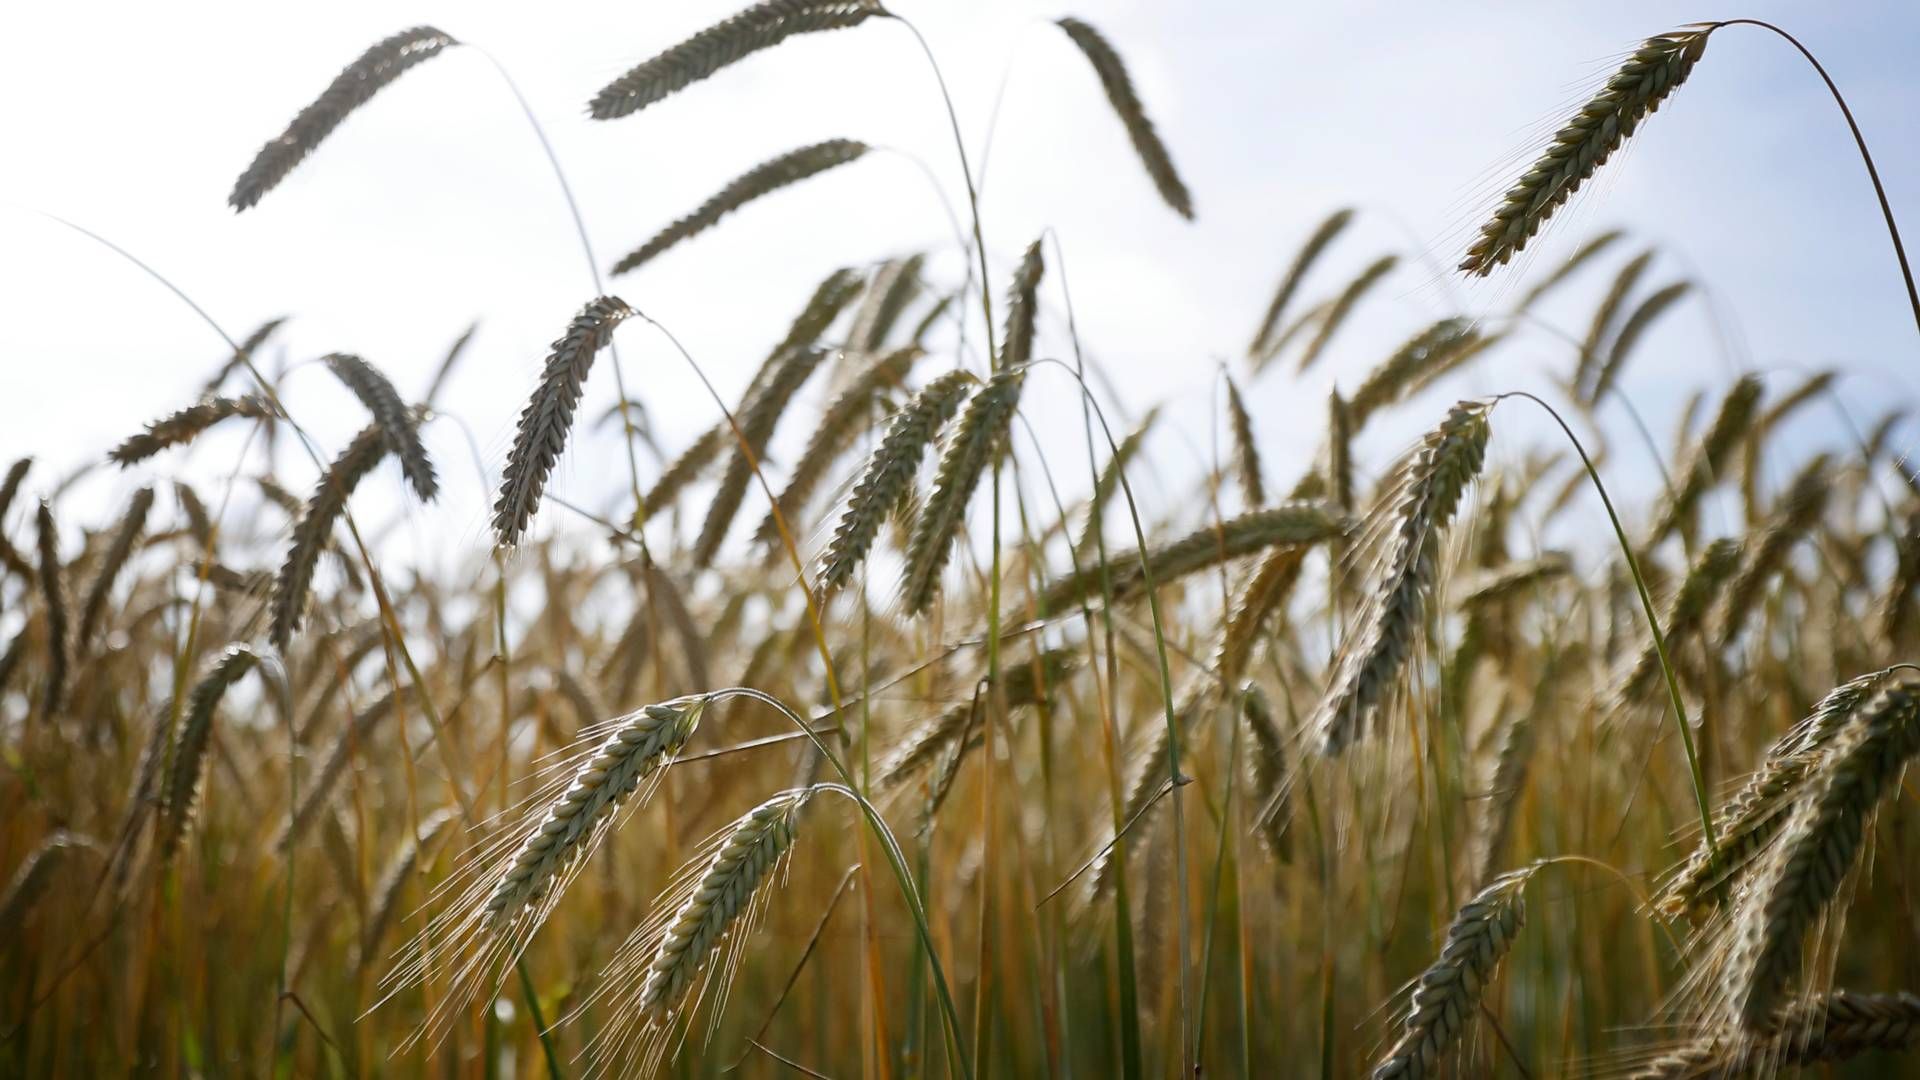 Billige ukrainske landbrugsvarer som korn har ifølge Polen presset lokale landmænd. | Foto: Jens Dresling